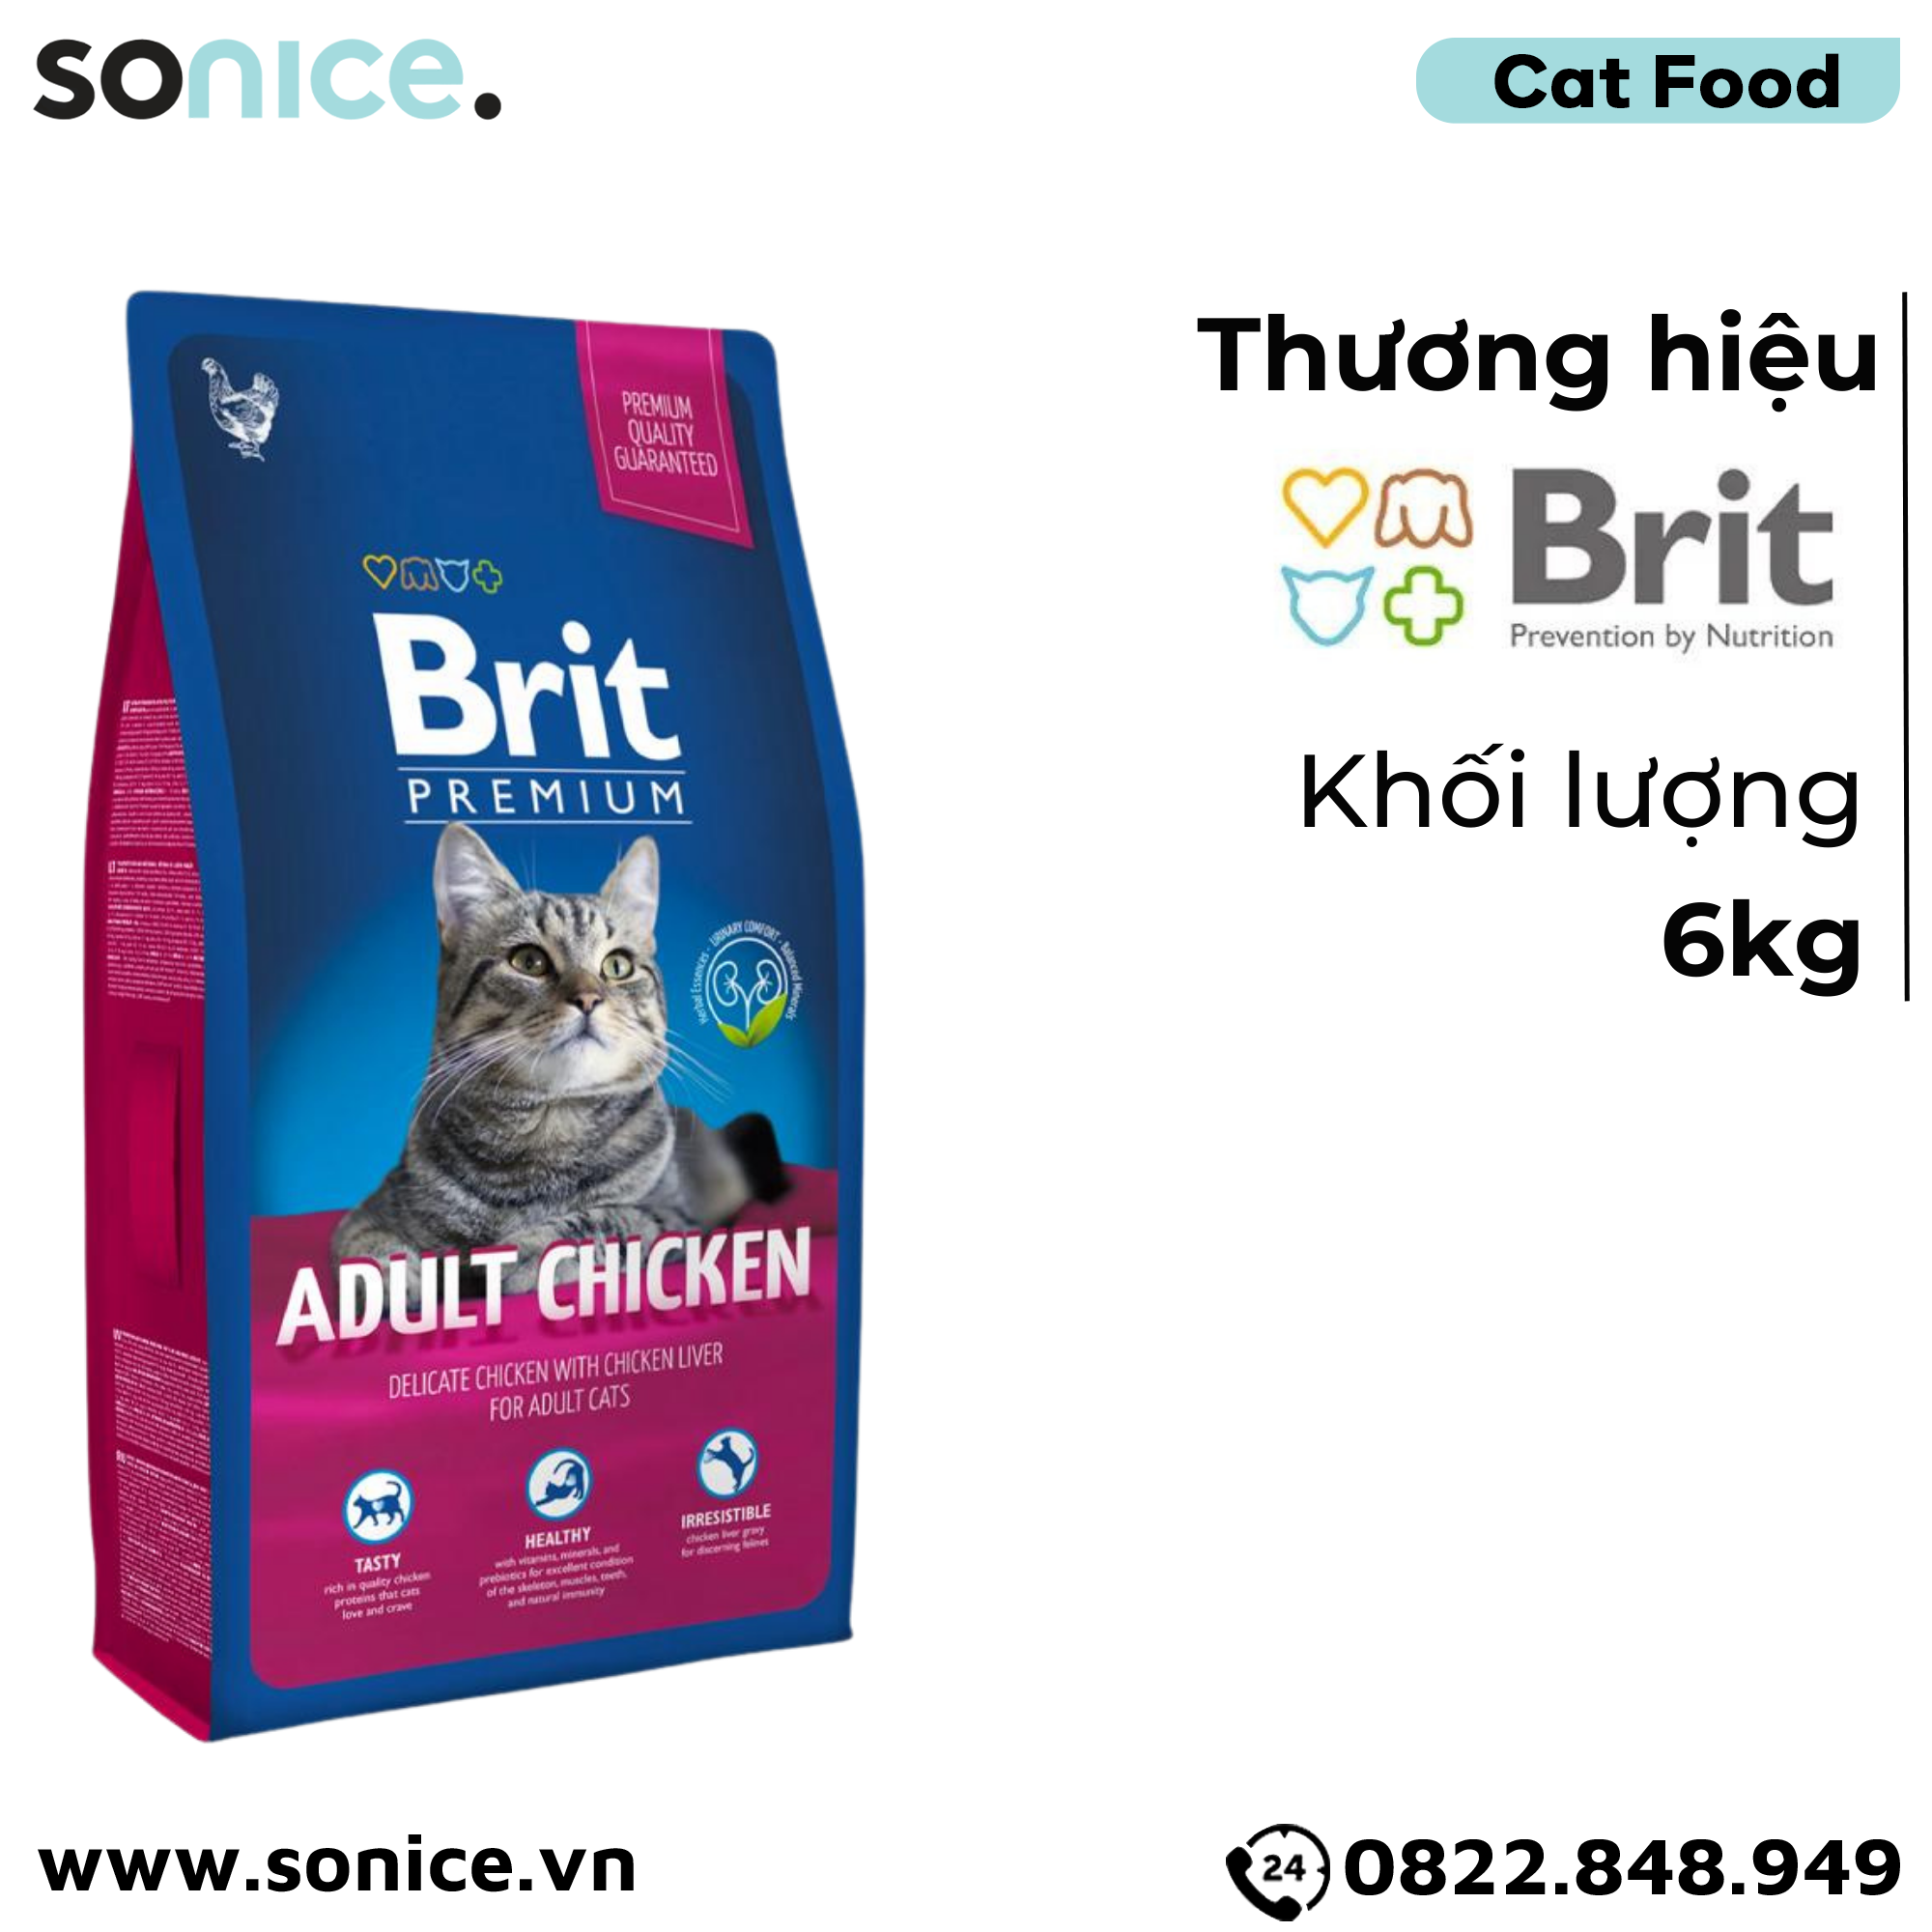  Thức ăn mèo Brit Premium Adult Chicken 6kg - Dành cho mèo trưởng thành vị Gà SONICE. 